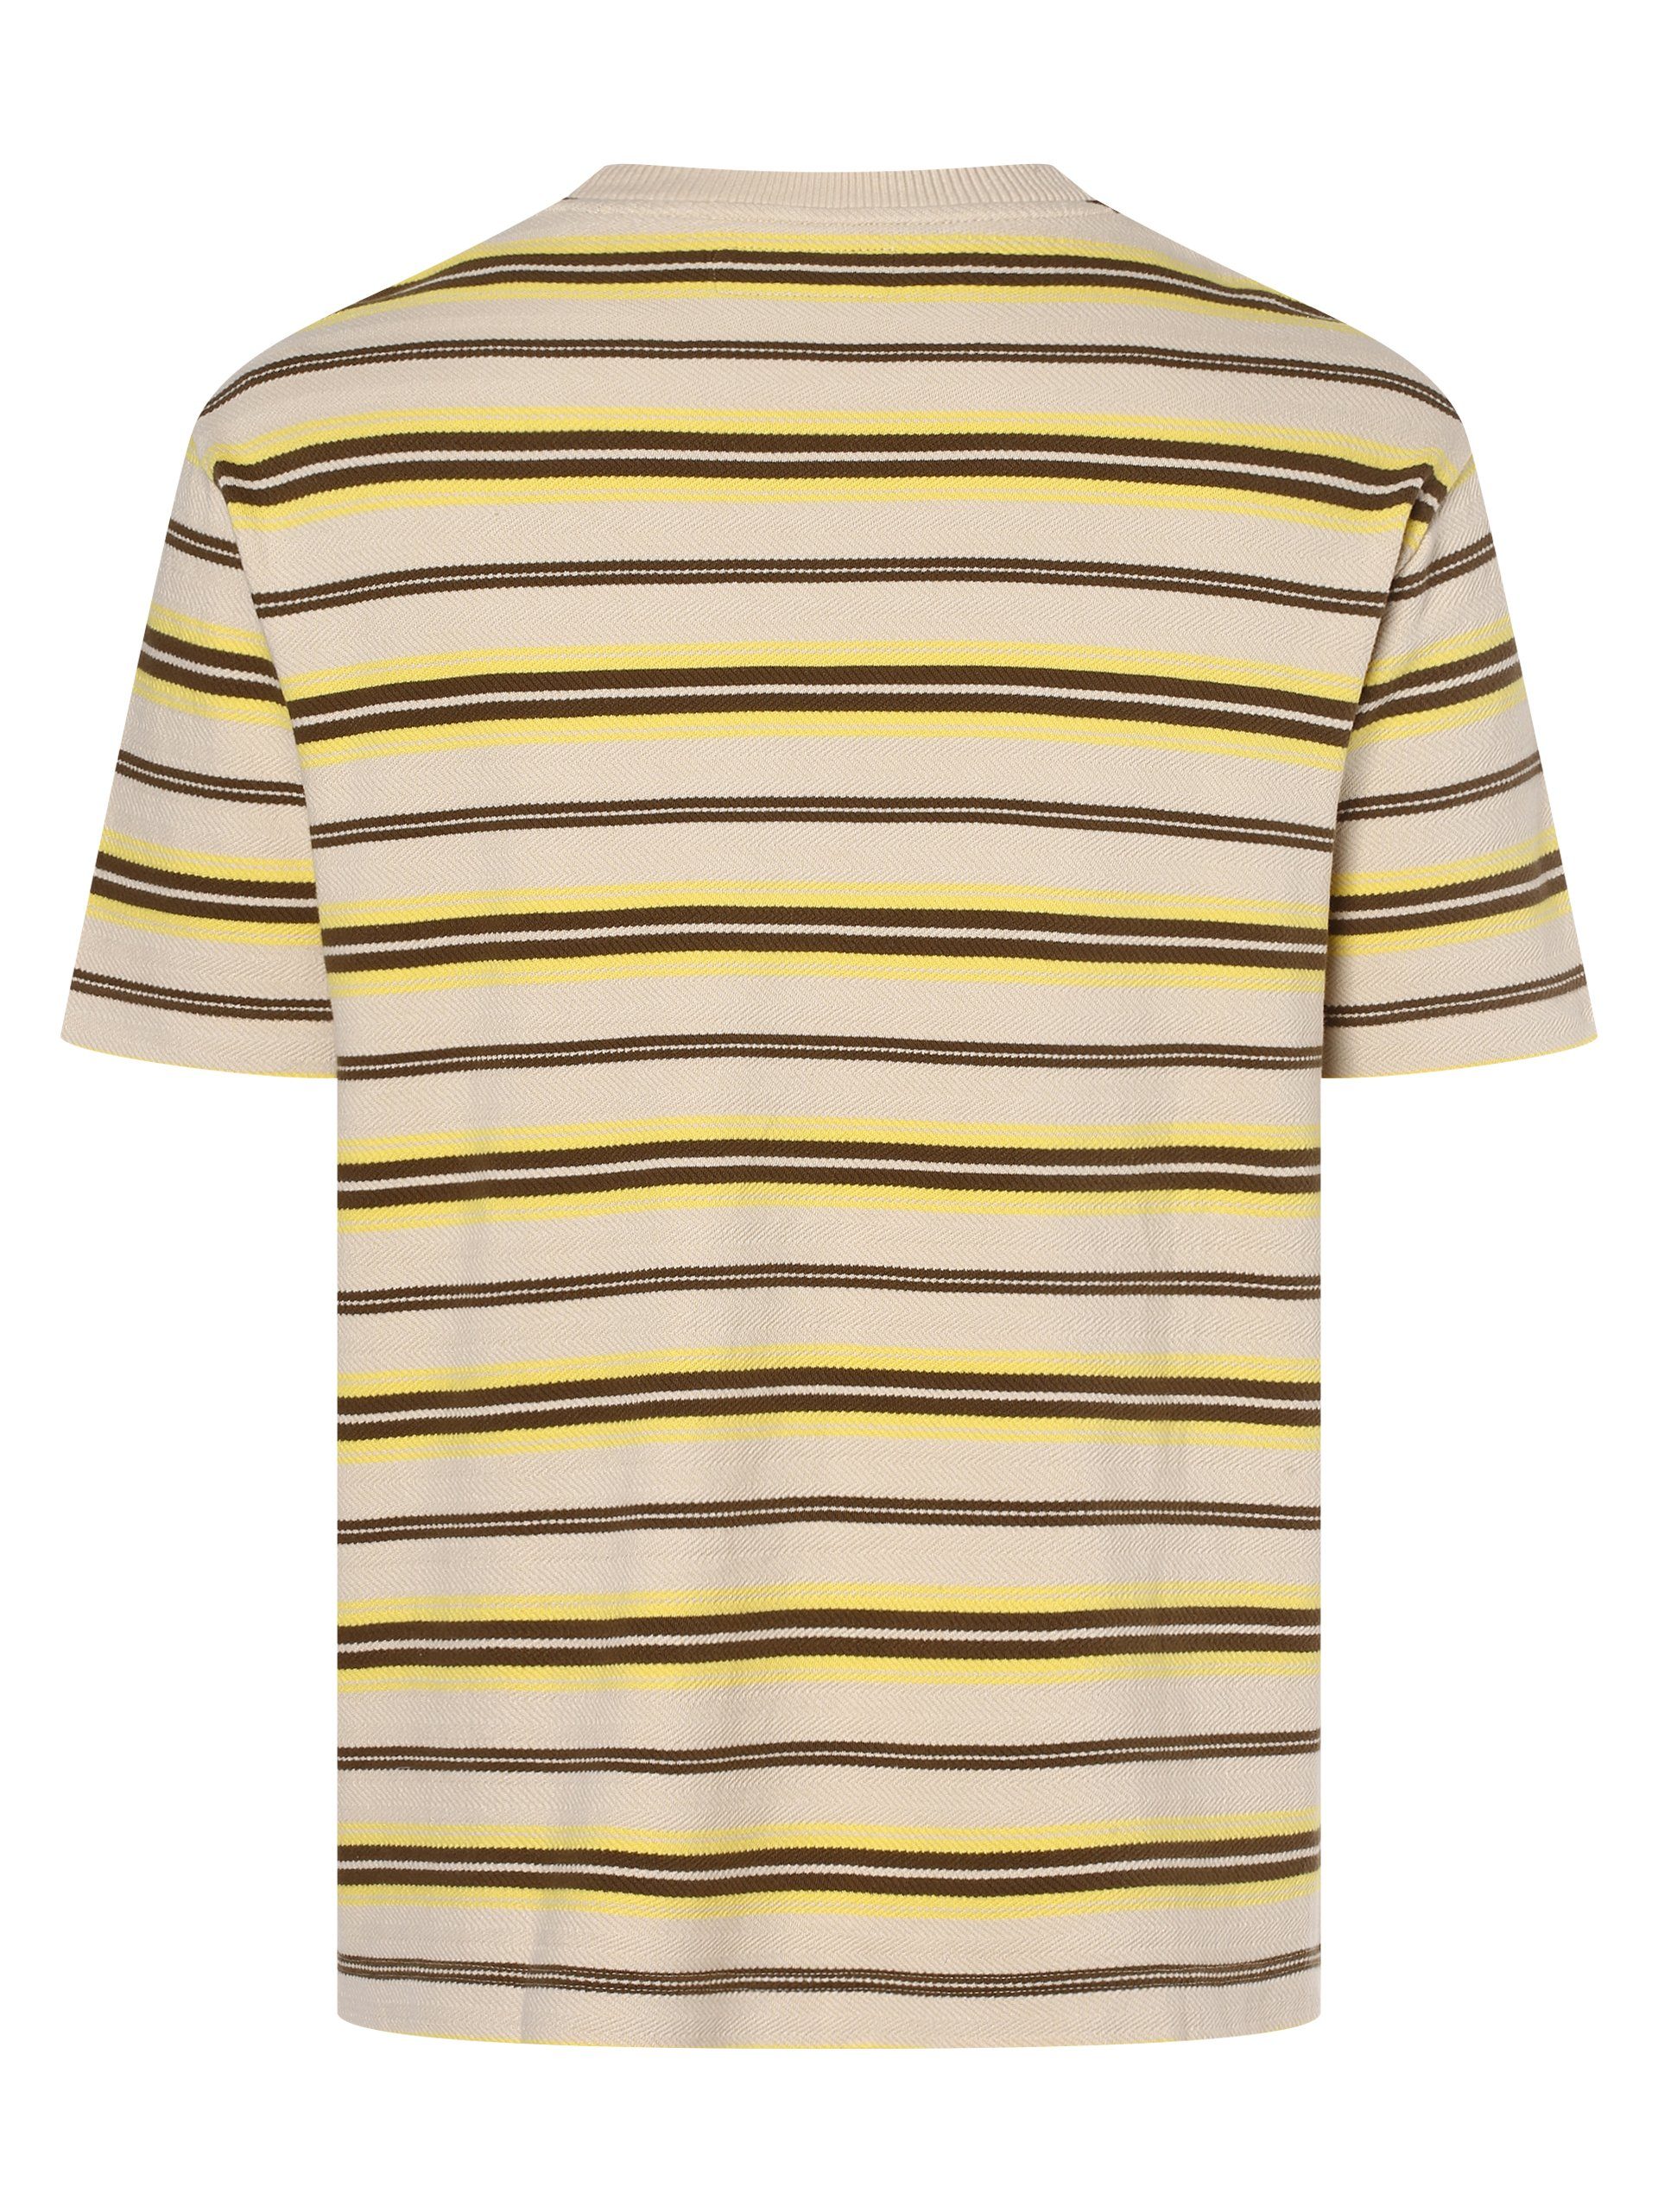 Marc O'Polo T-Shirt beige gelb